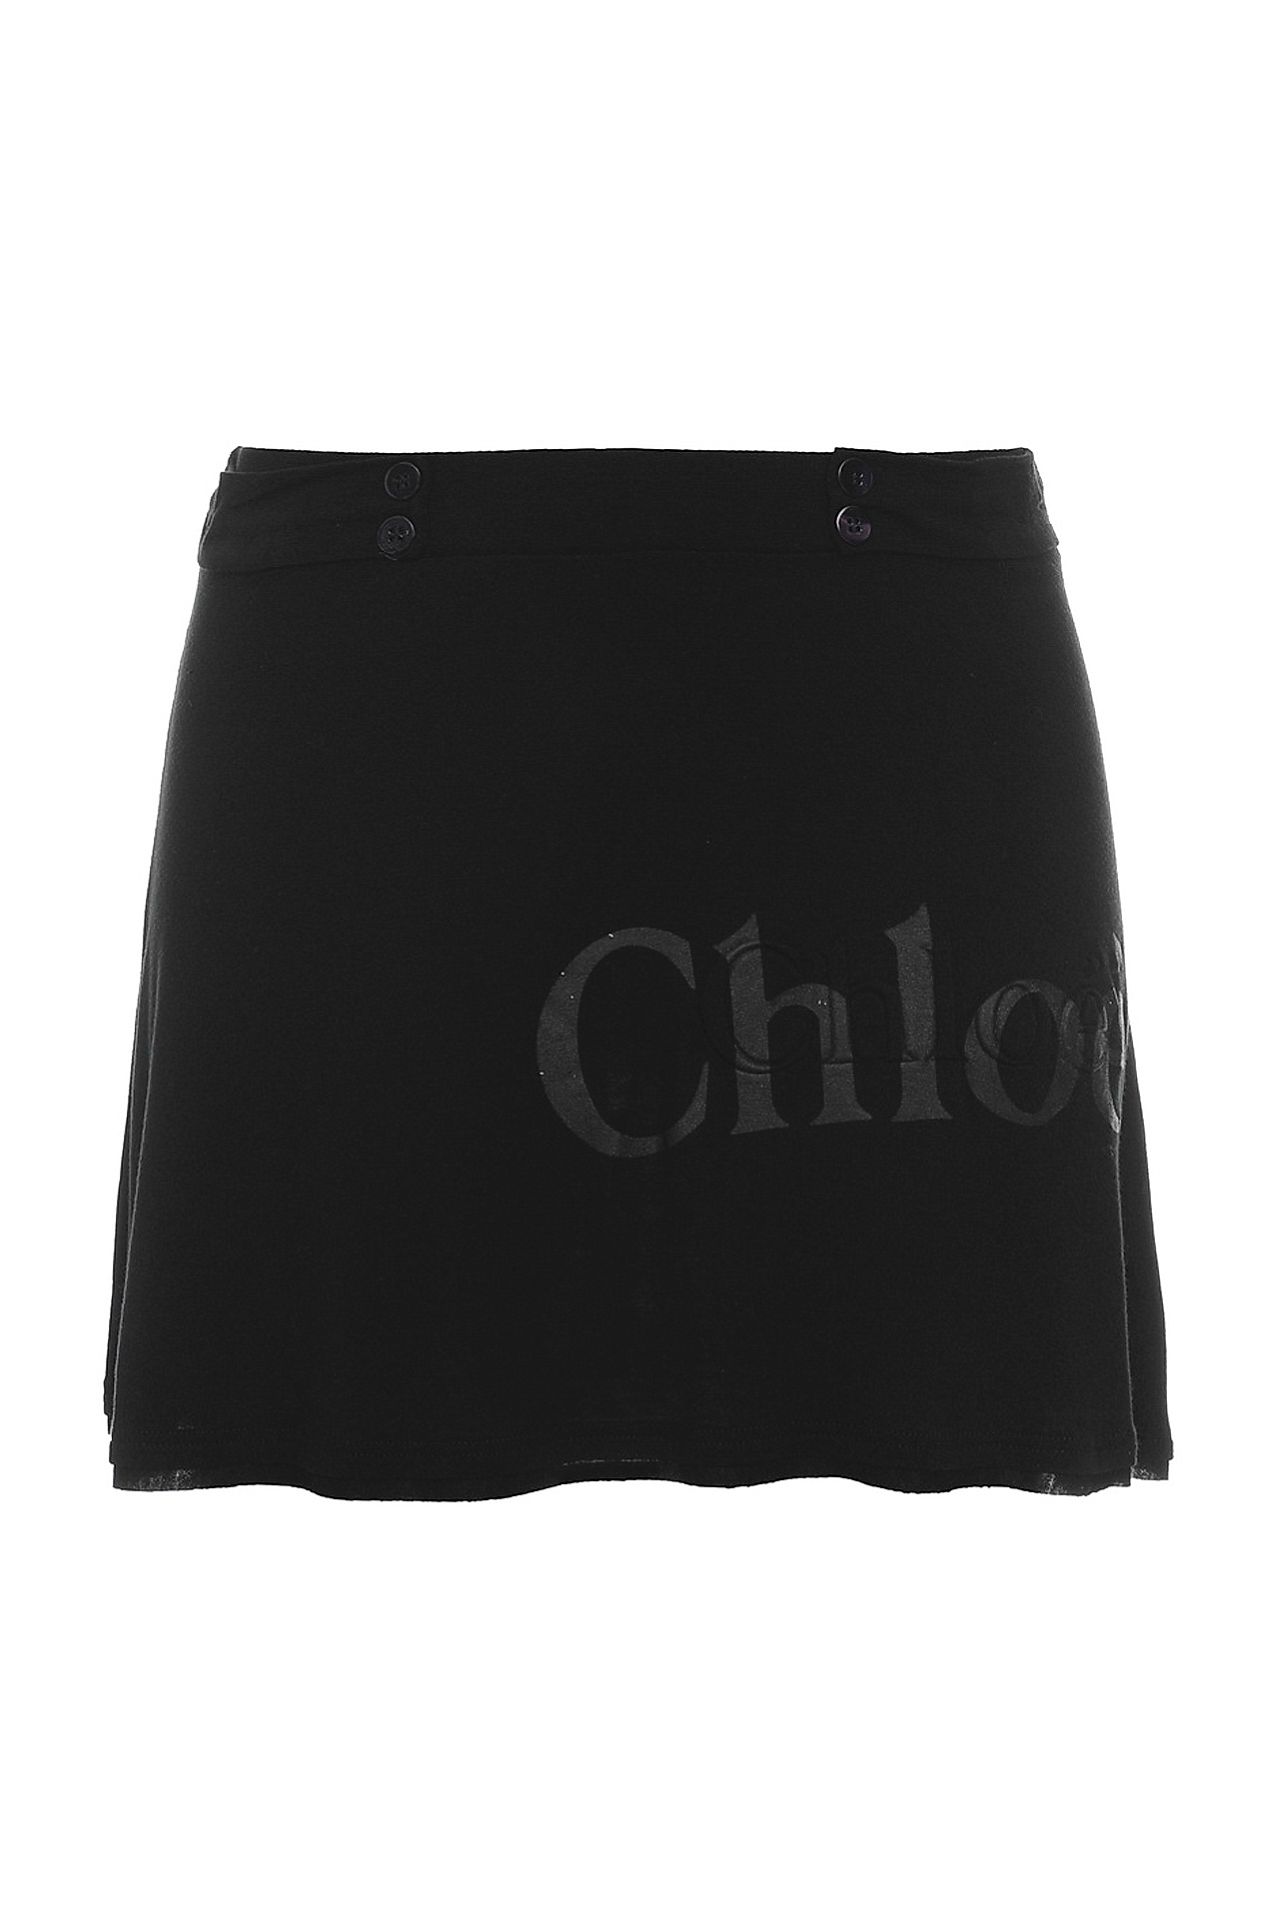 Одежда женская Юбка CHLOE (G109497/19). Купить за 6950 руб.